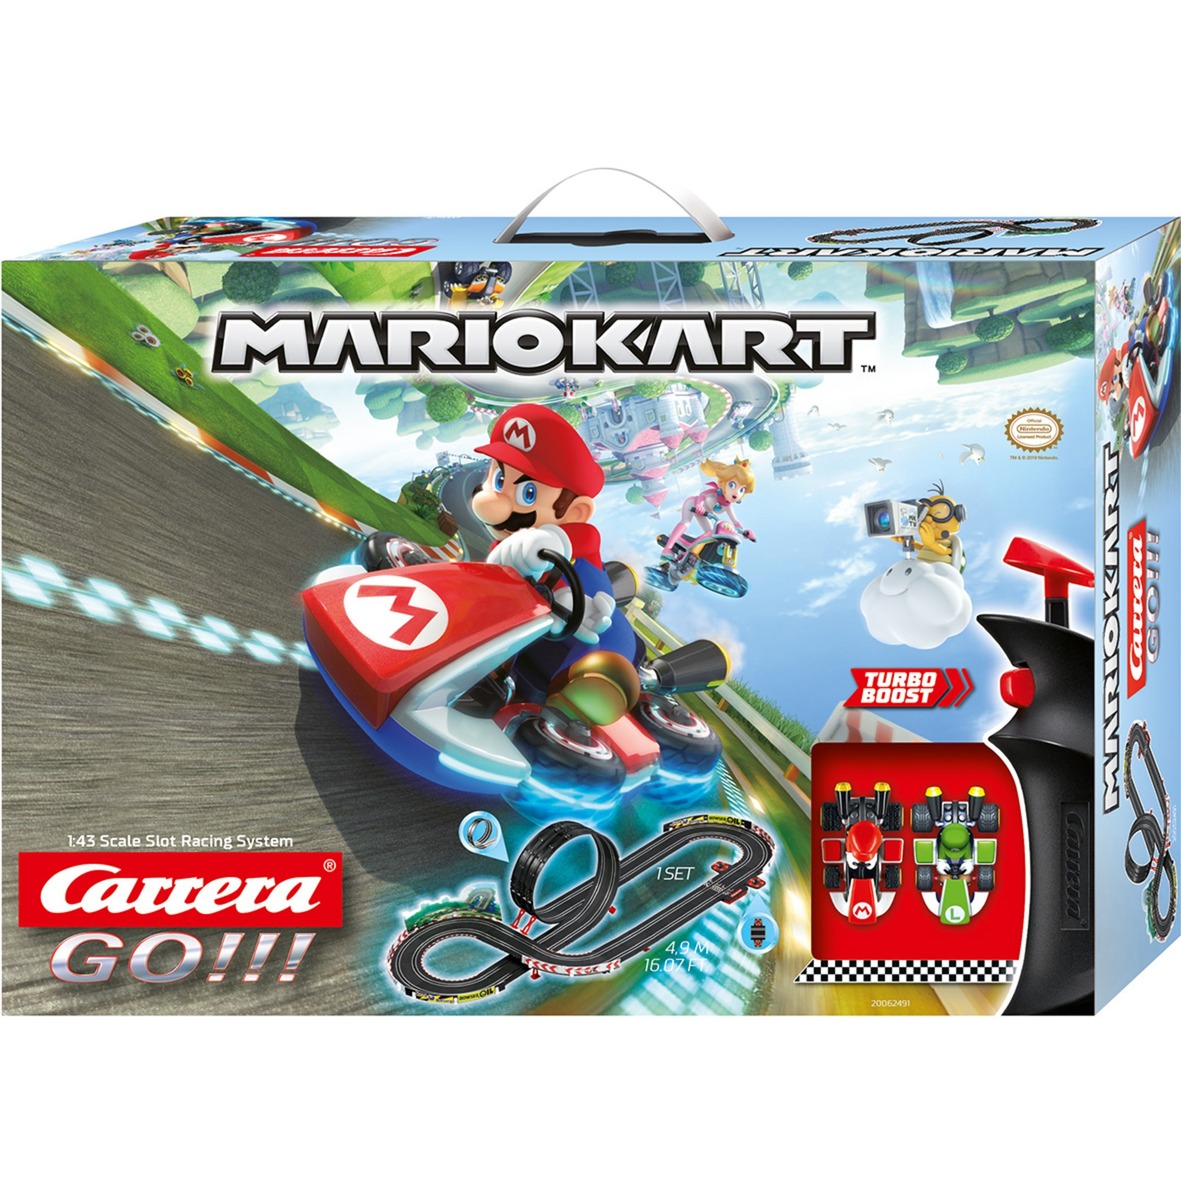 Image of Alternate - GO!!! Nintendo Mario Kart 8, Rennbahn online einkaufen bei Alternate